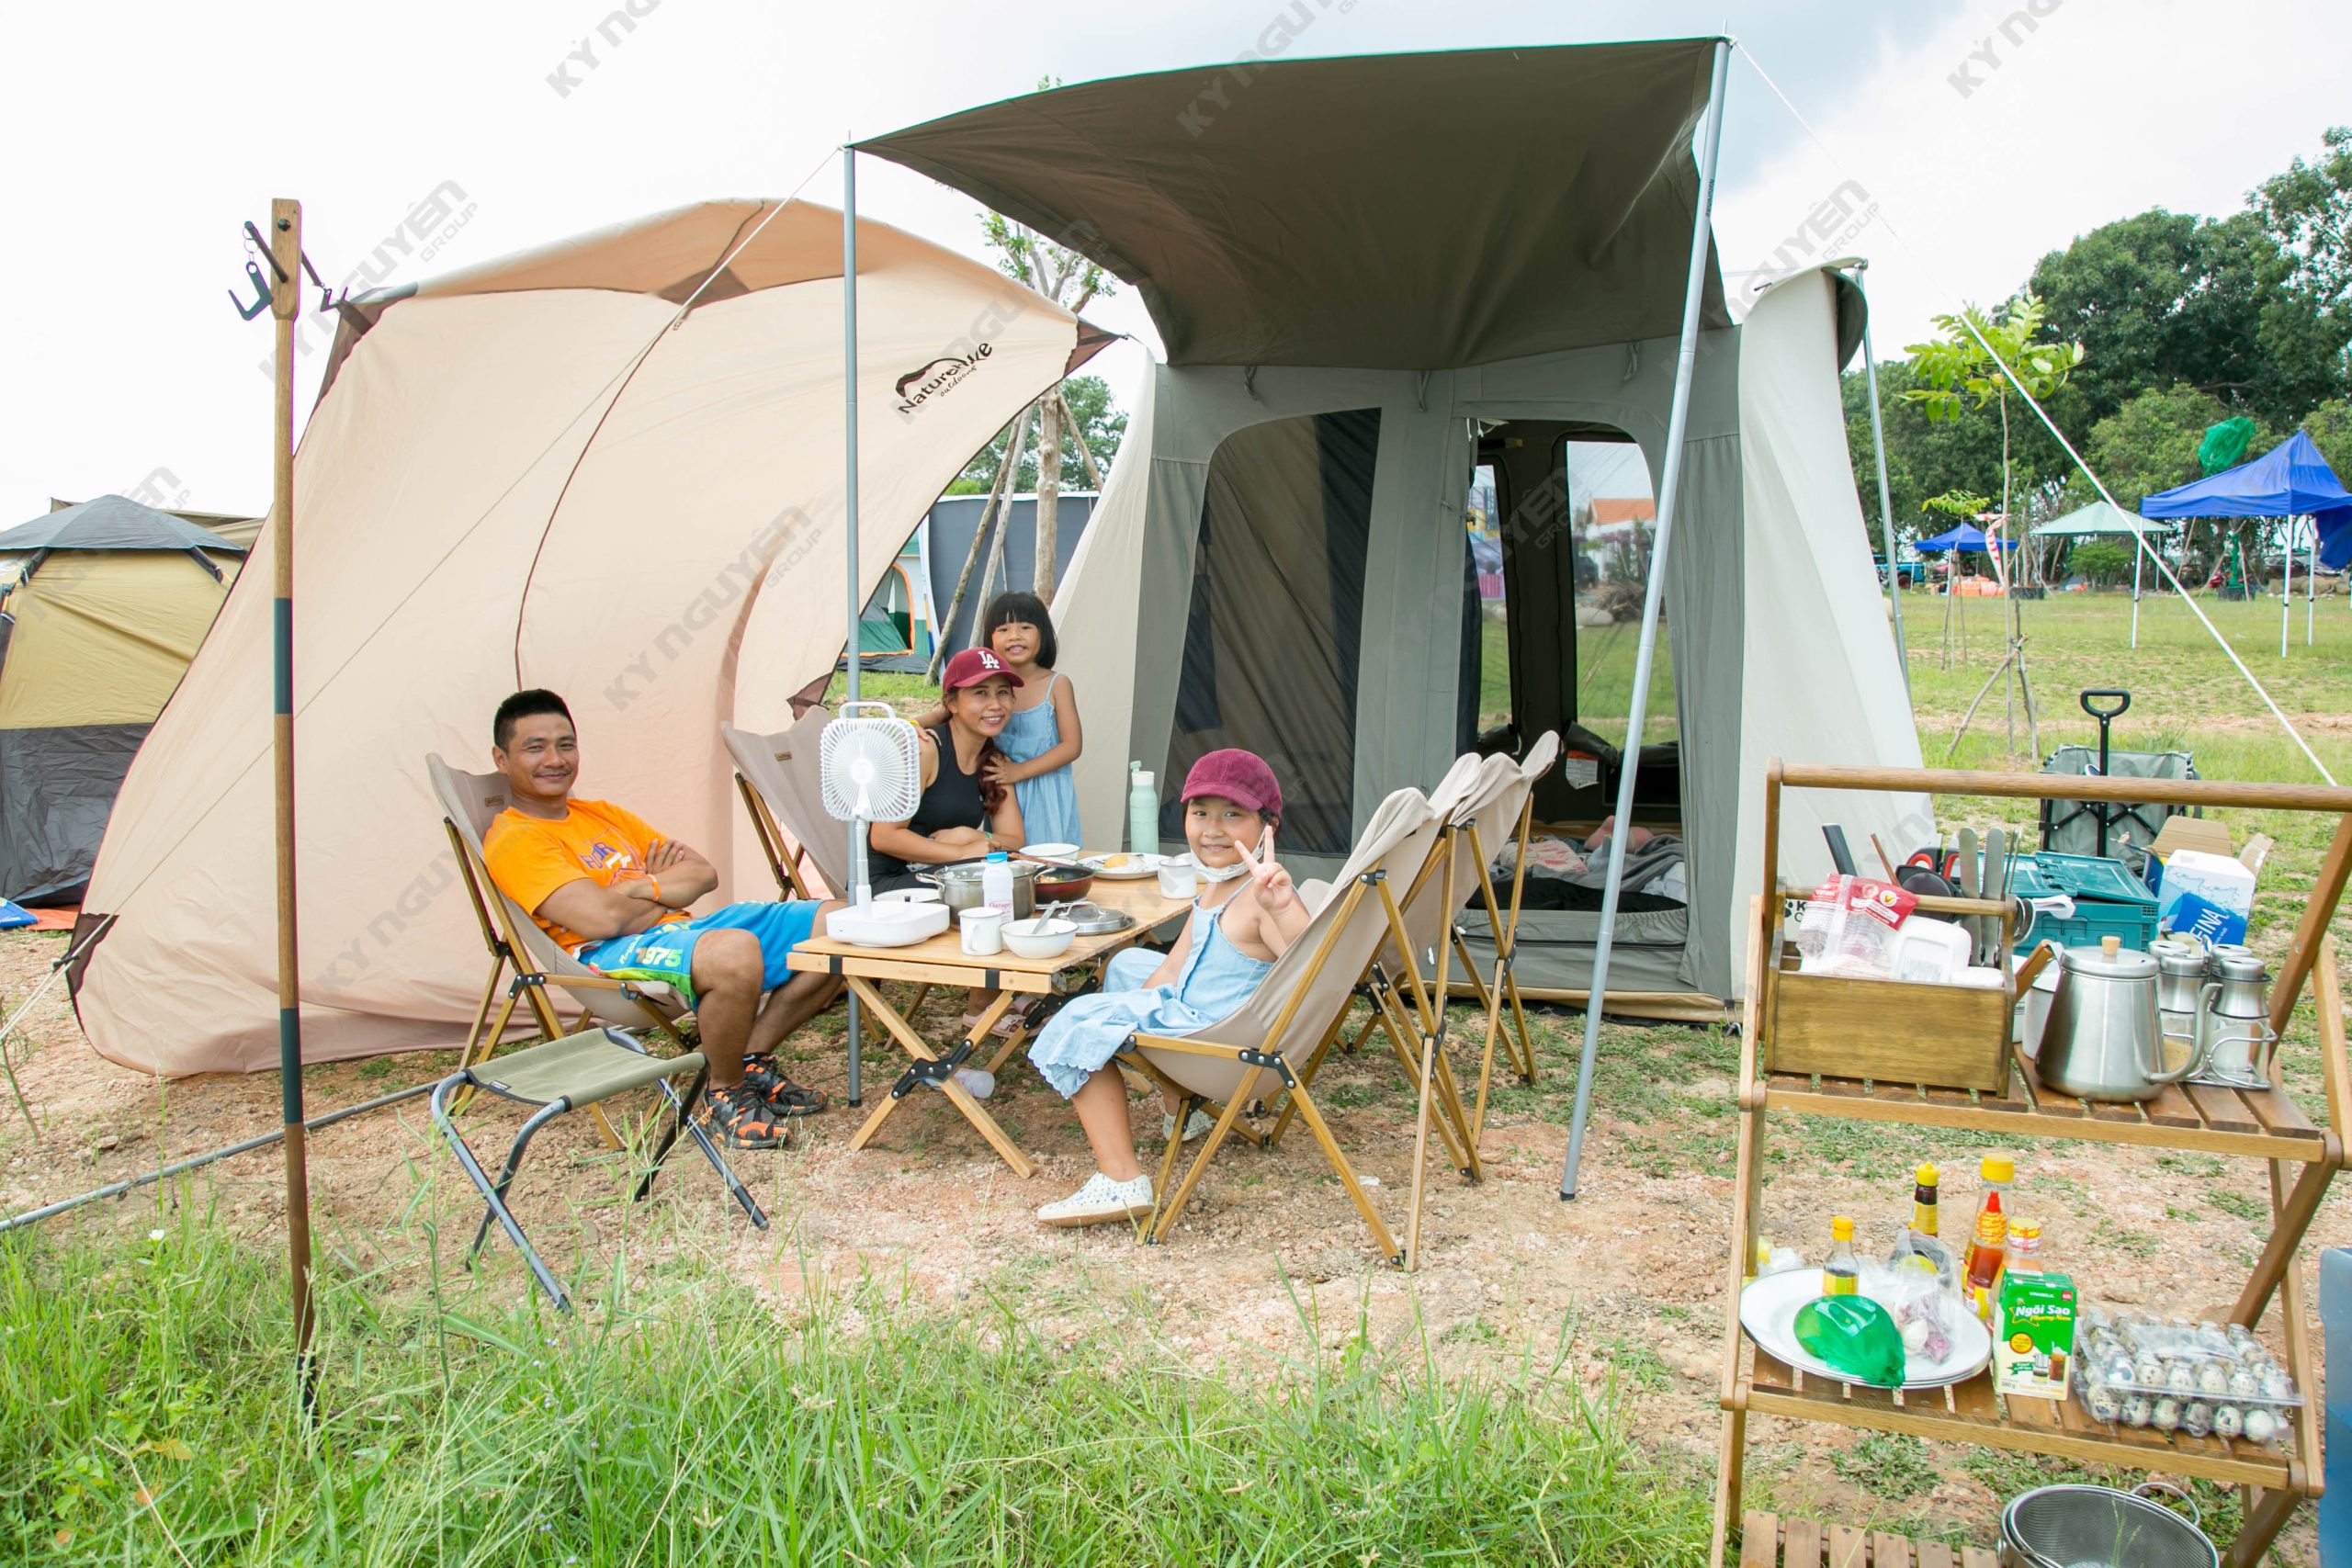 Du lịch công ty - Camping mở ra sân chơi cho mọi đối tượng